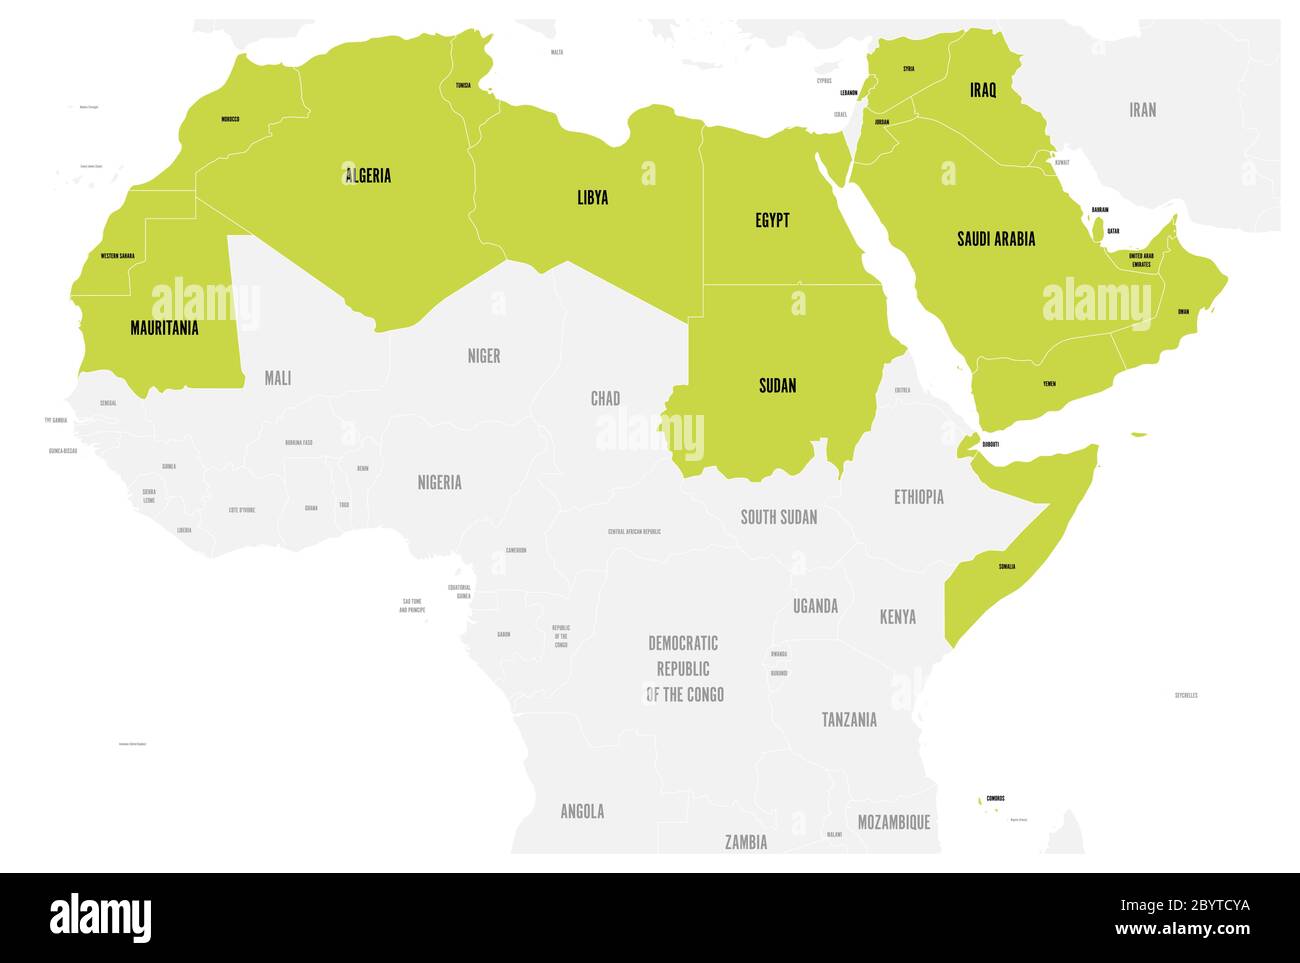 Arabische Welt Staaten politische Karte mit erhellten 22 arabischsprachigen Ländern der Arabischen Liga. Nordafrika und Naher Osten. Vektorgrafik. Stock Vektor